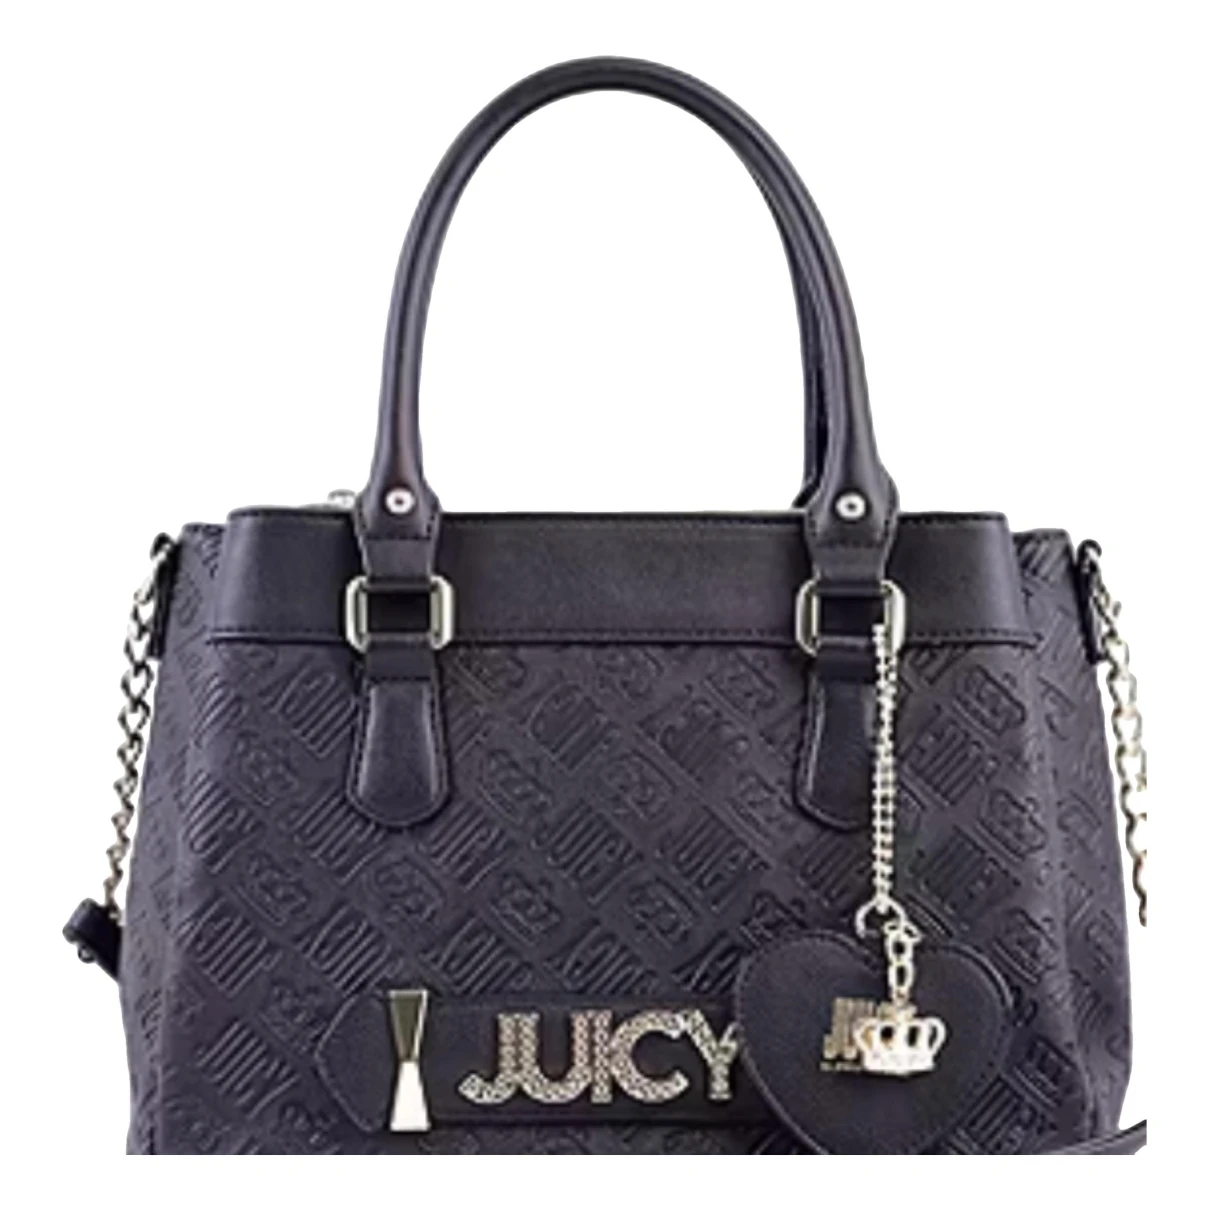 Pre-owned Juicy Couture Vinyl Handbag In Black